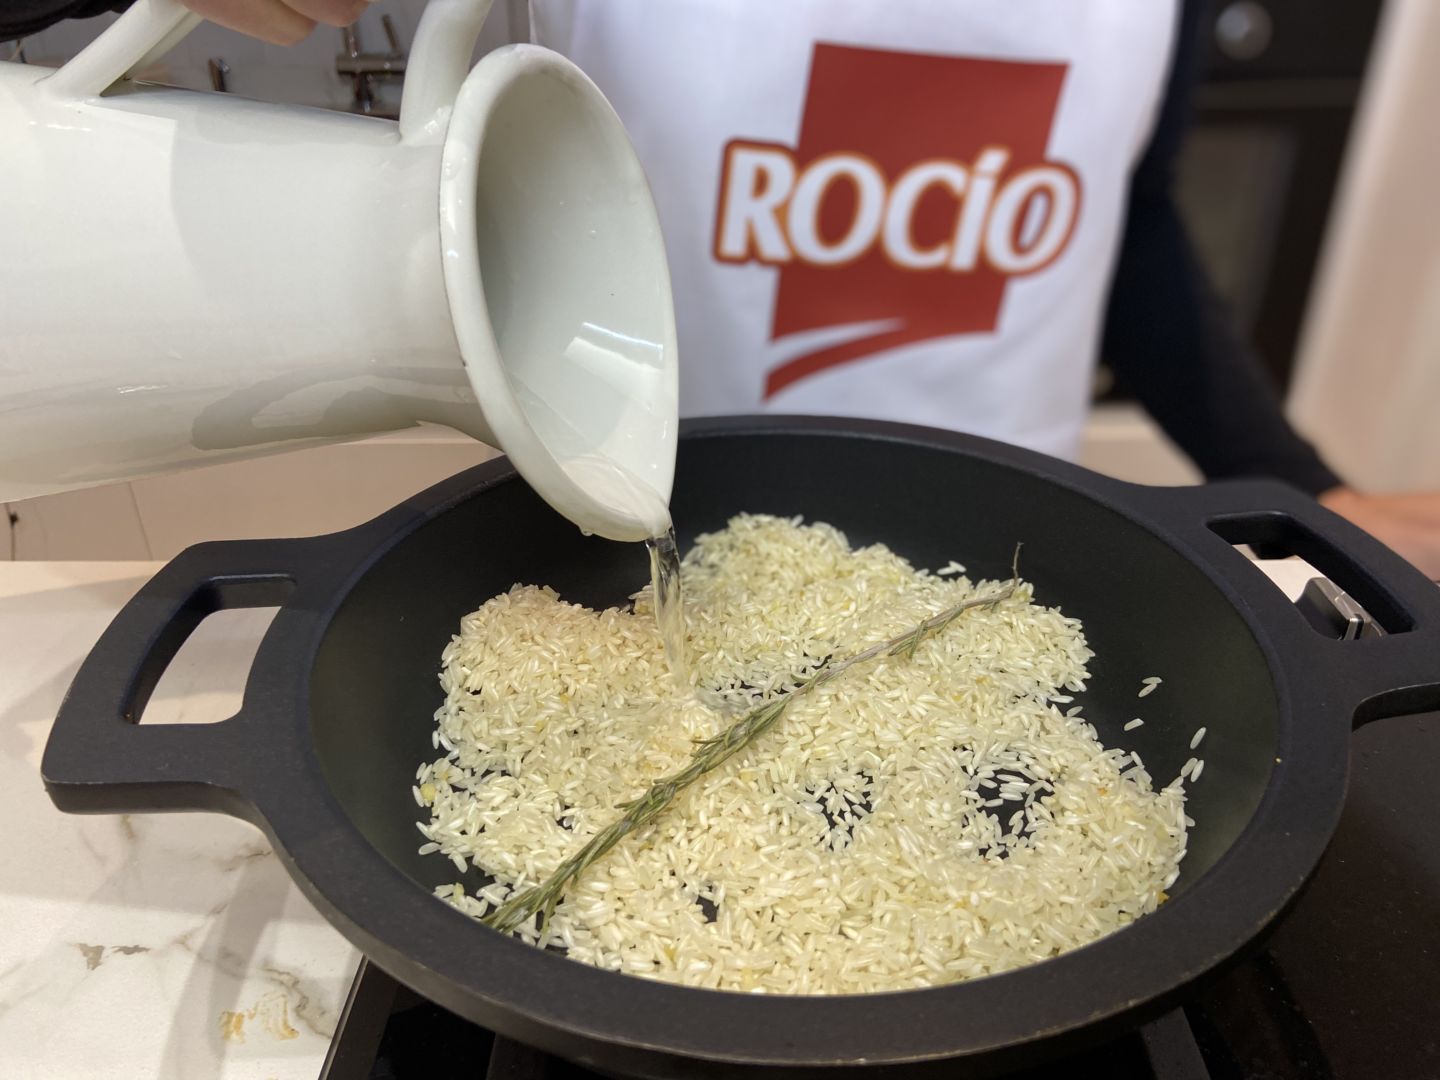 Empezamos la receta cocinando el arroz